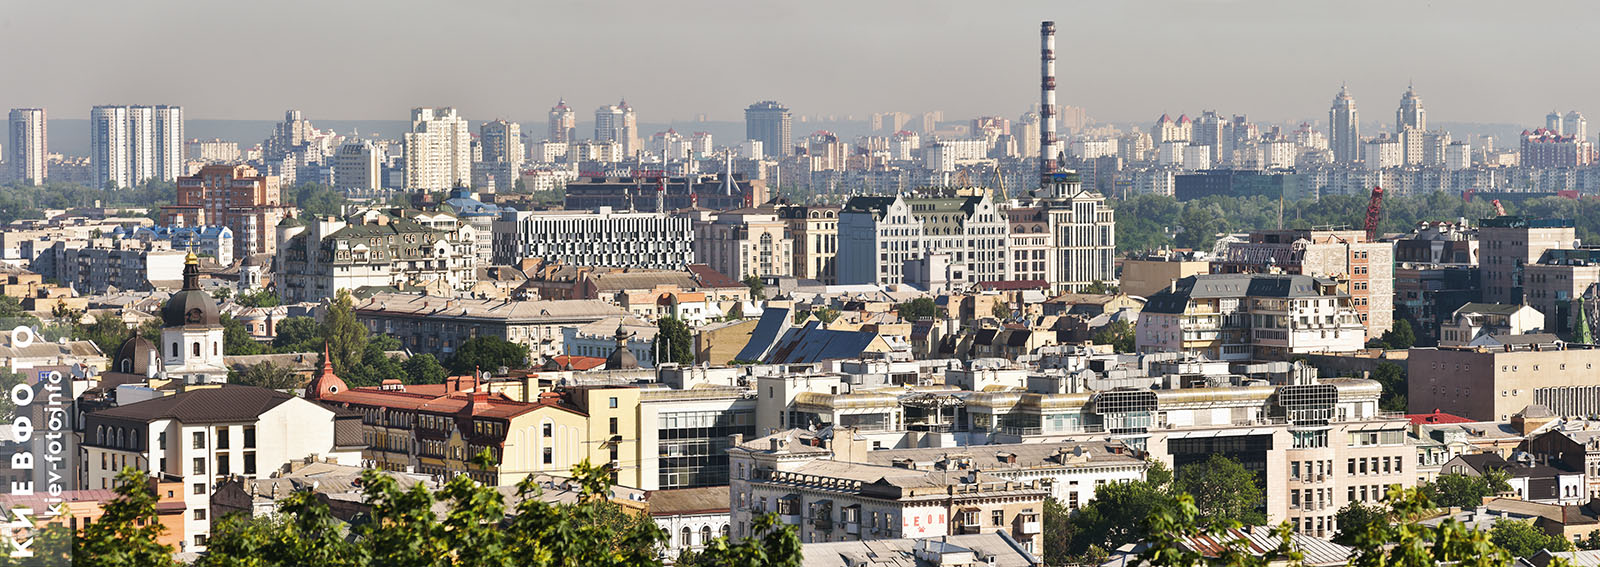 Панорамный вид. Фотографии Подола в Киеве